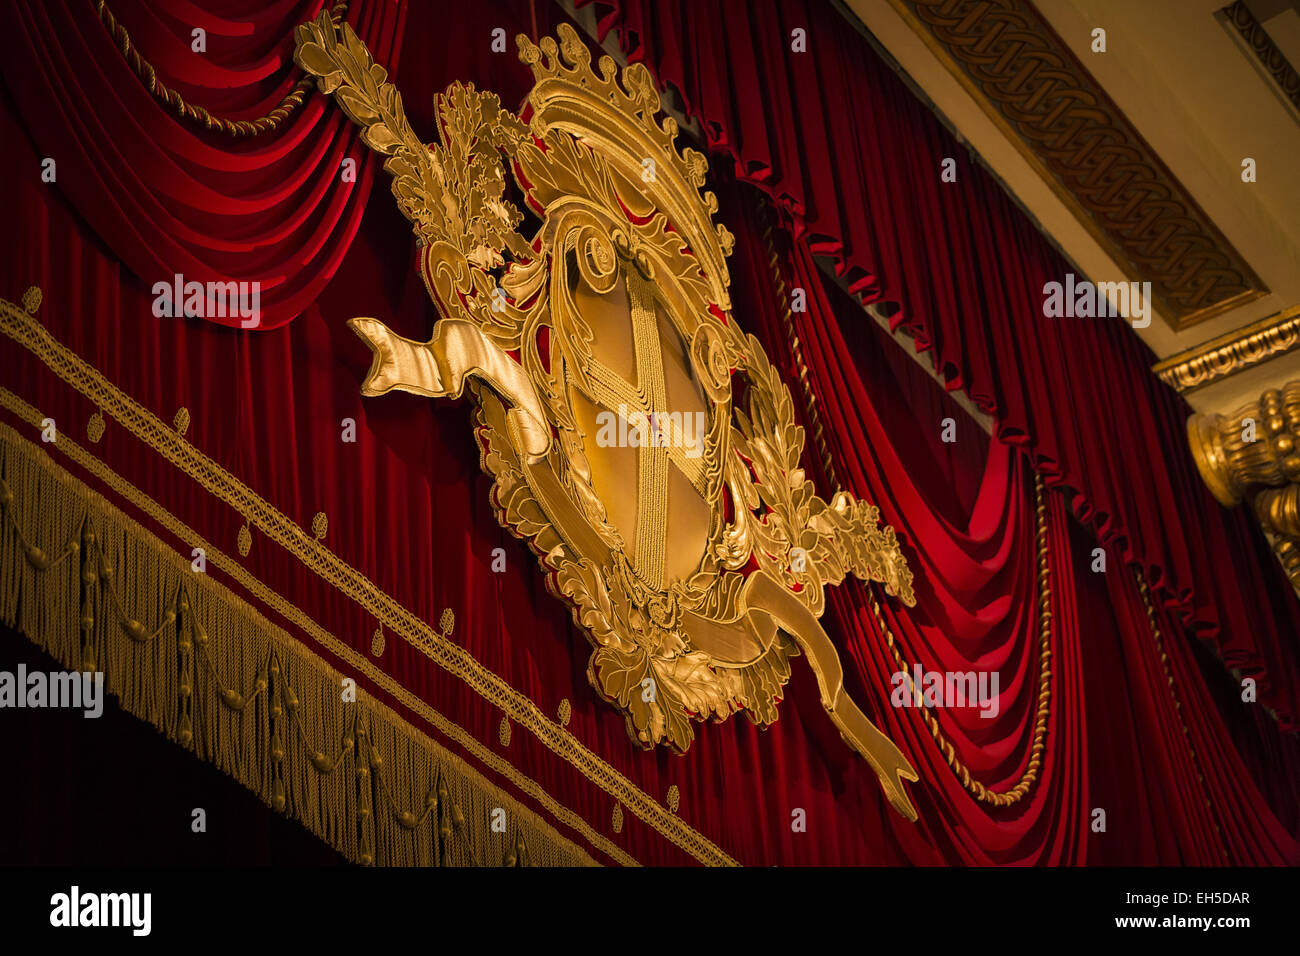 Rideau de scène en velours rouge dans le théâtre de La Scala, Milan, Italie Banque D'Images